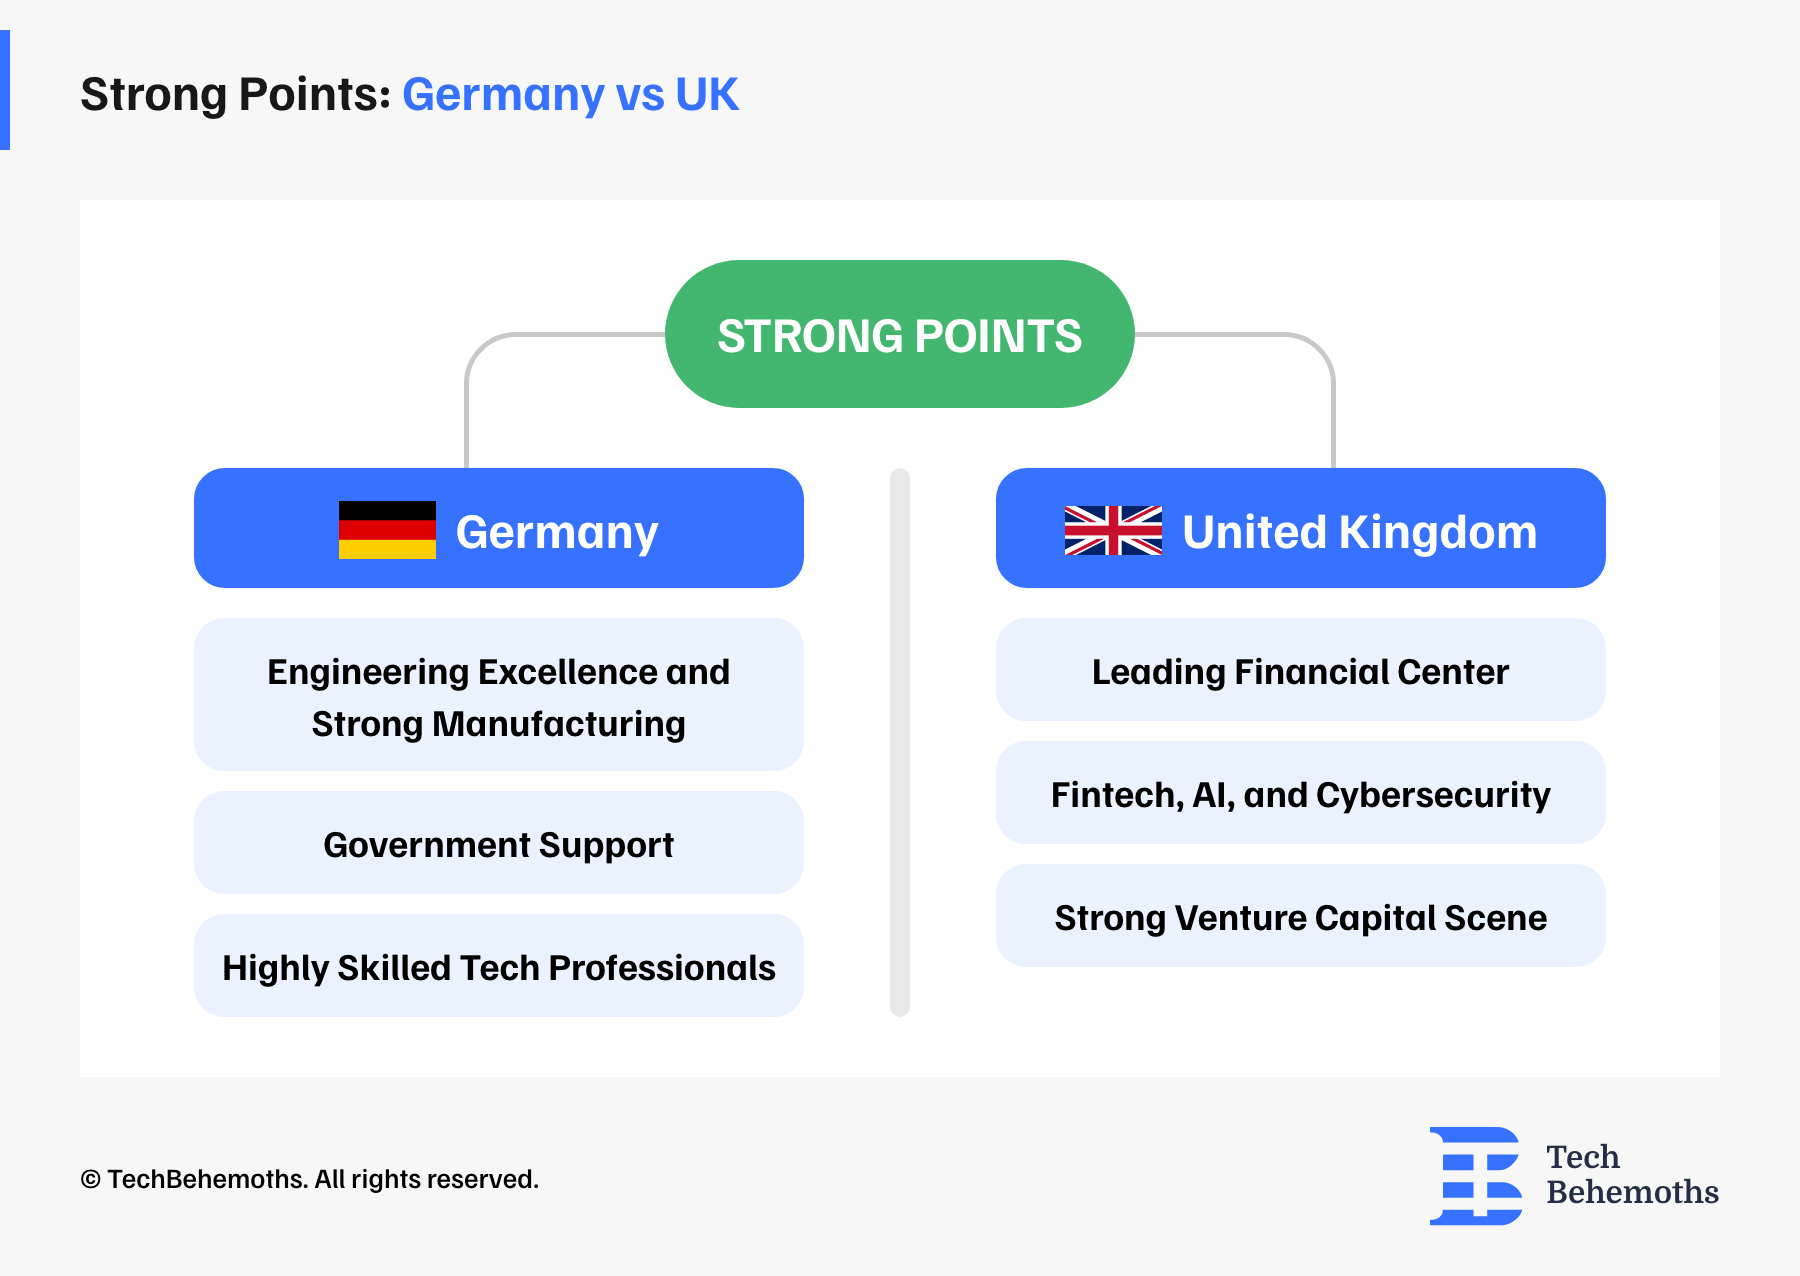 Strong Points Hermany vs UK